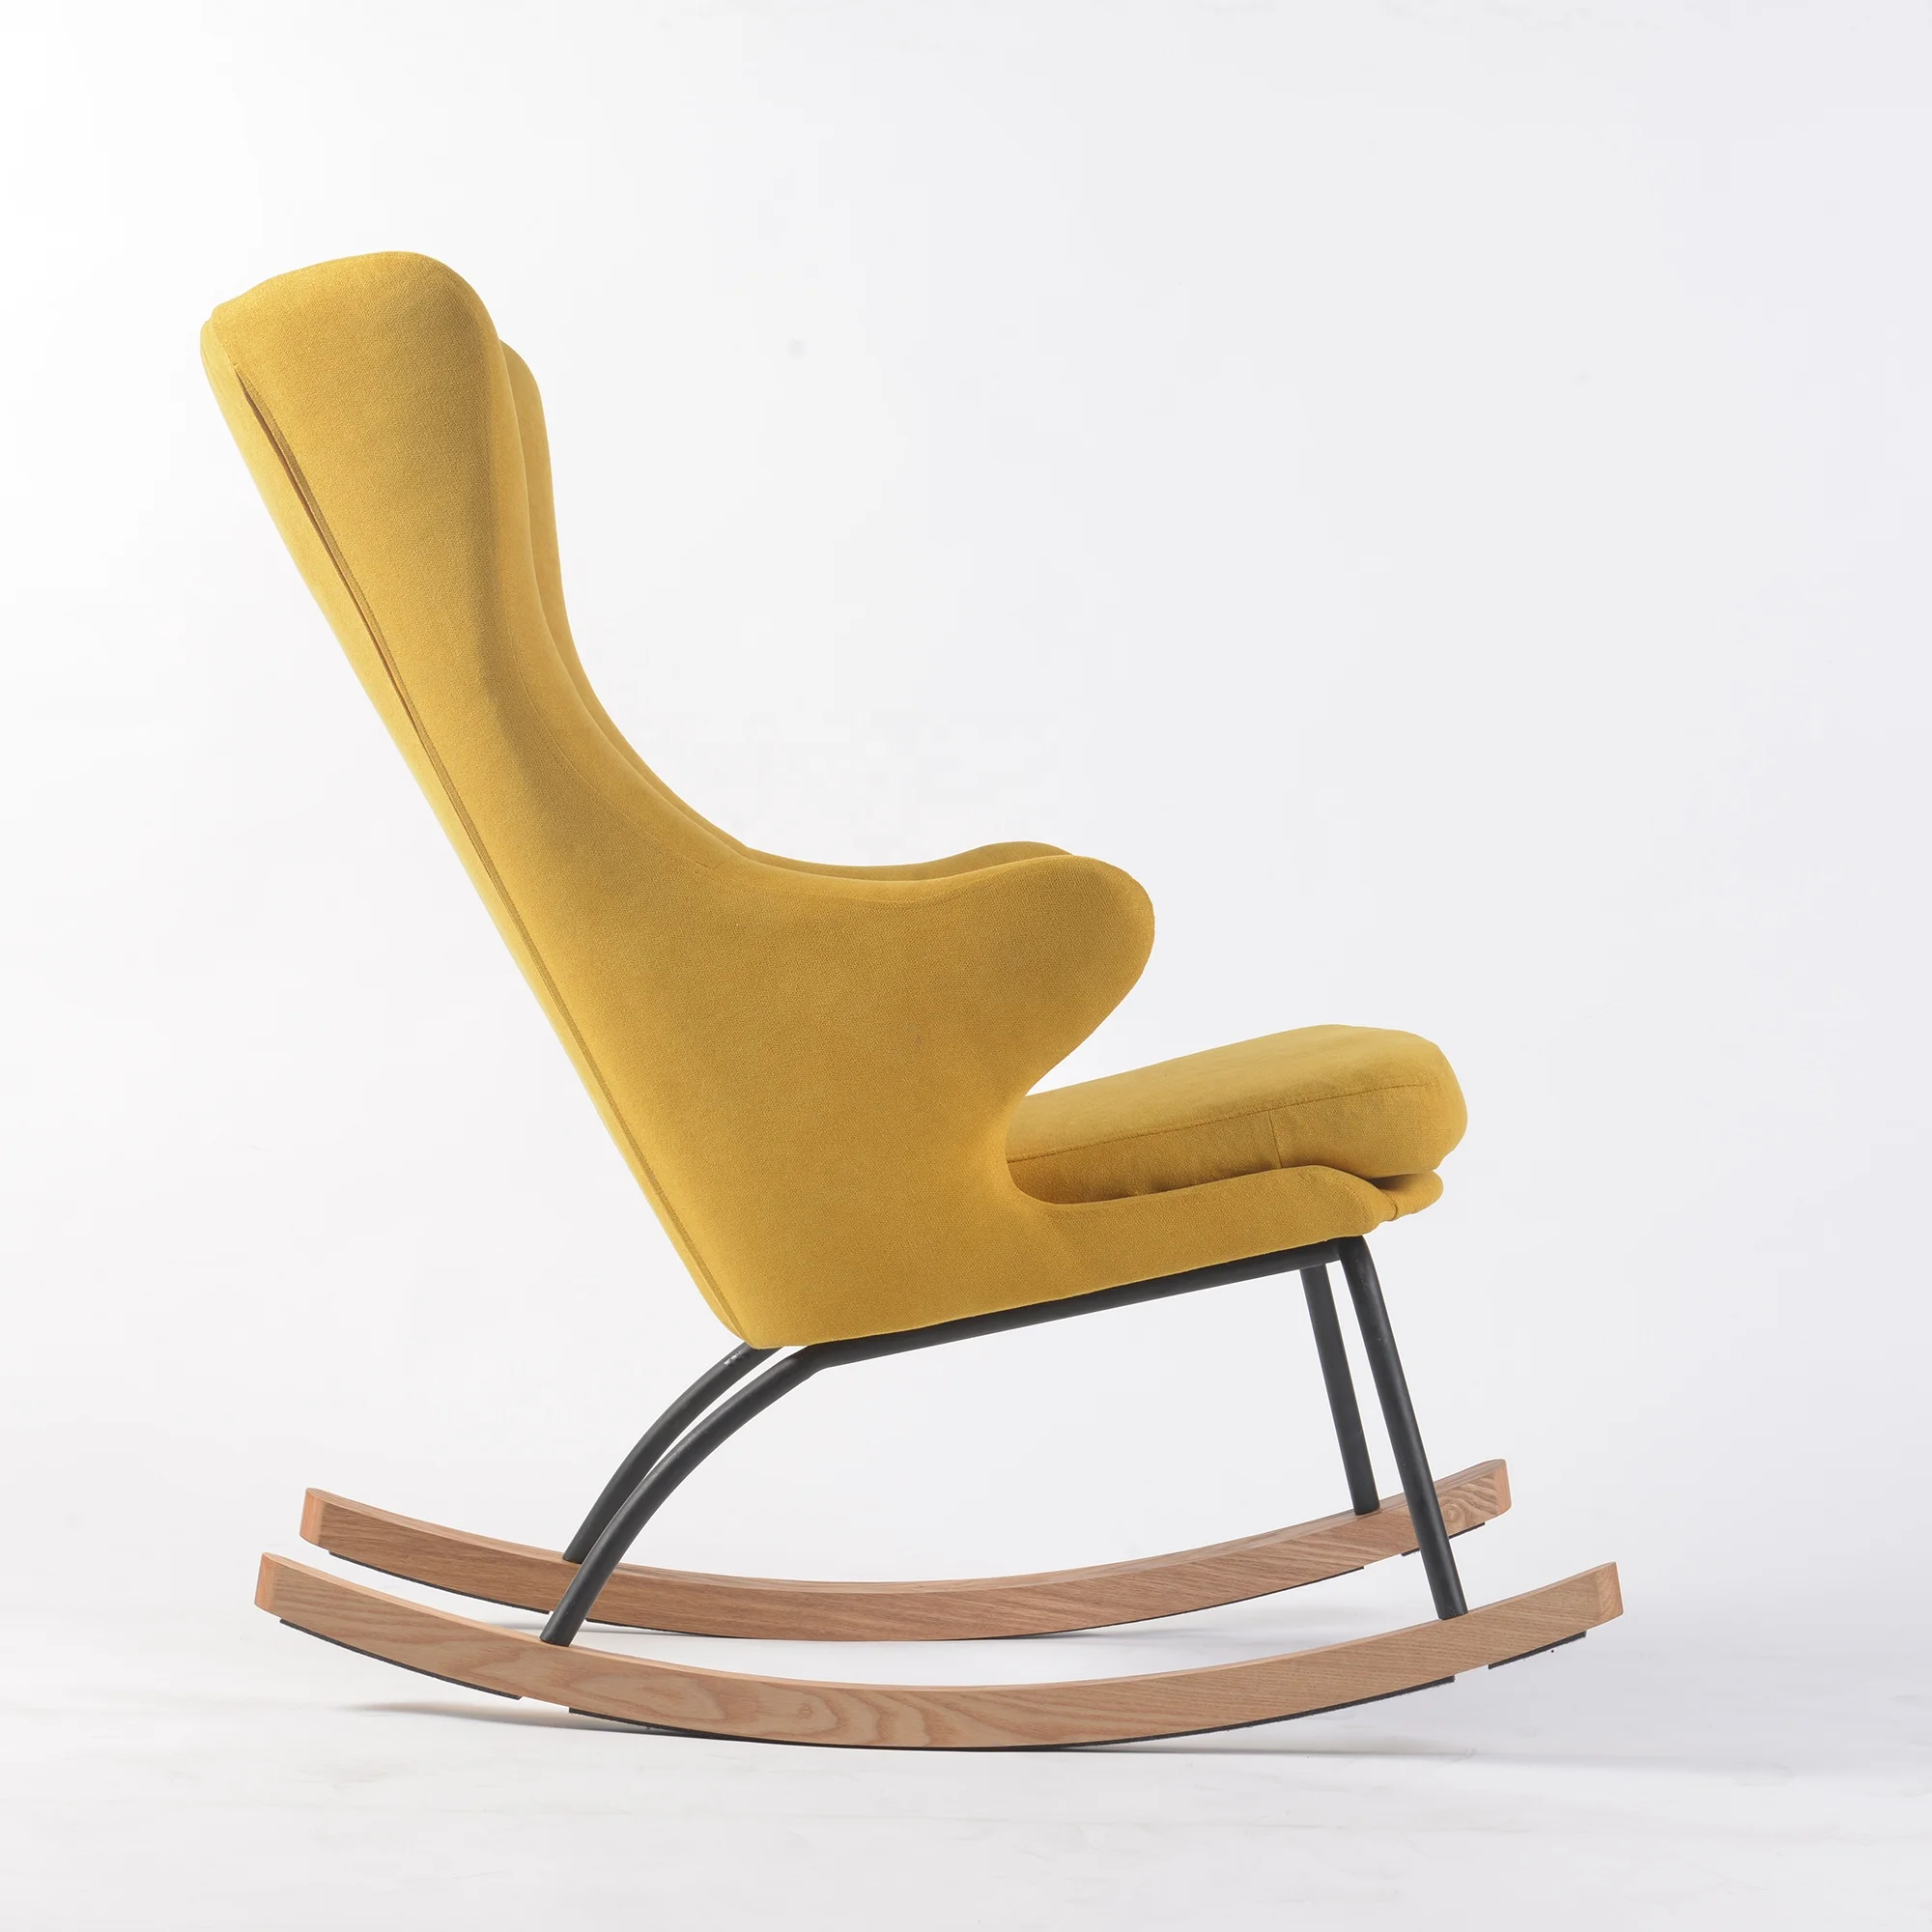 stylish glider chair